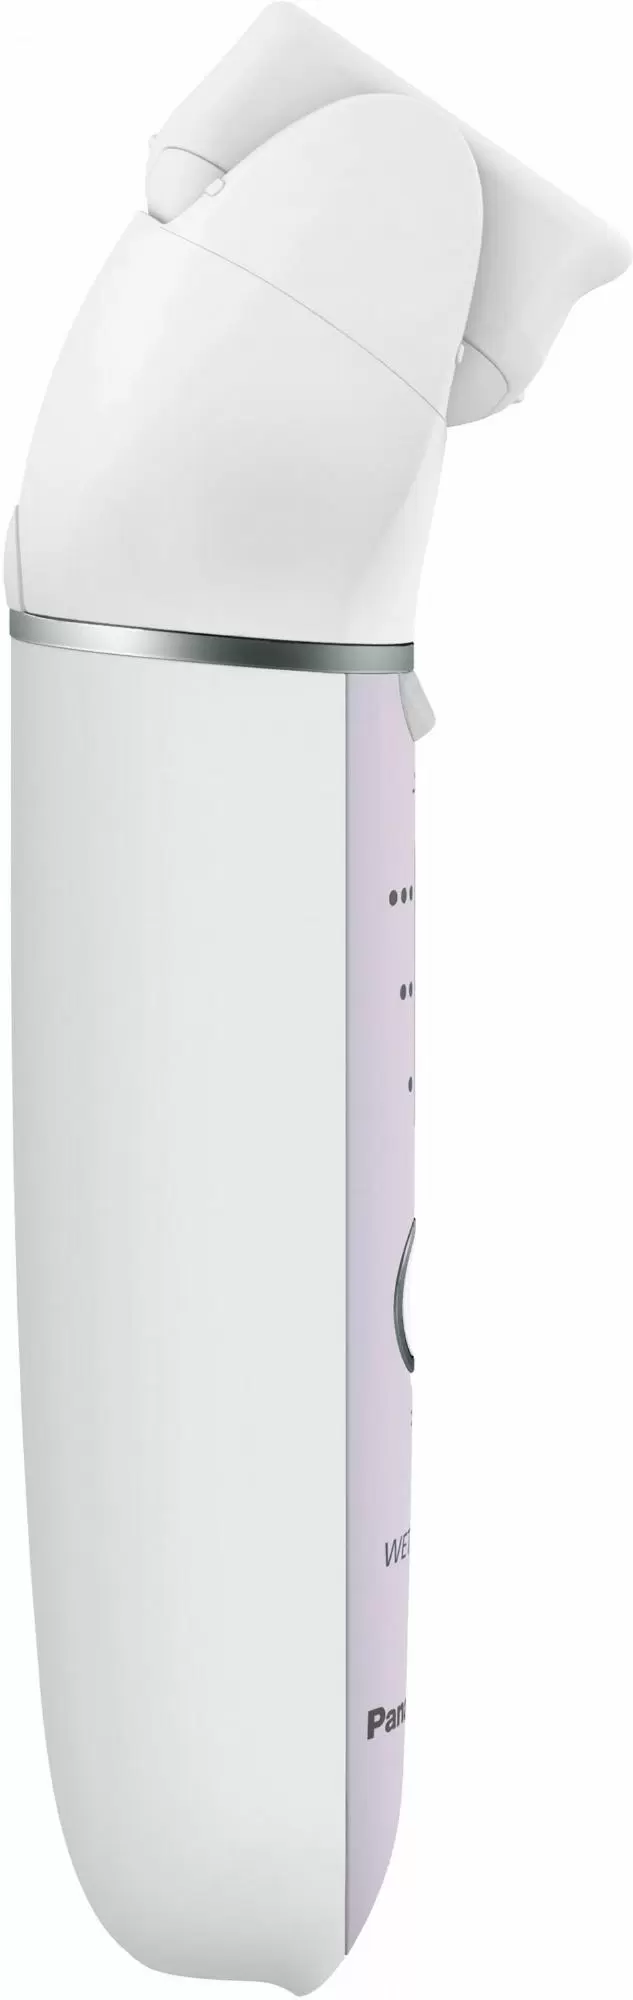 Epilator Panasonic ES-EY30-V520, roz